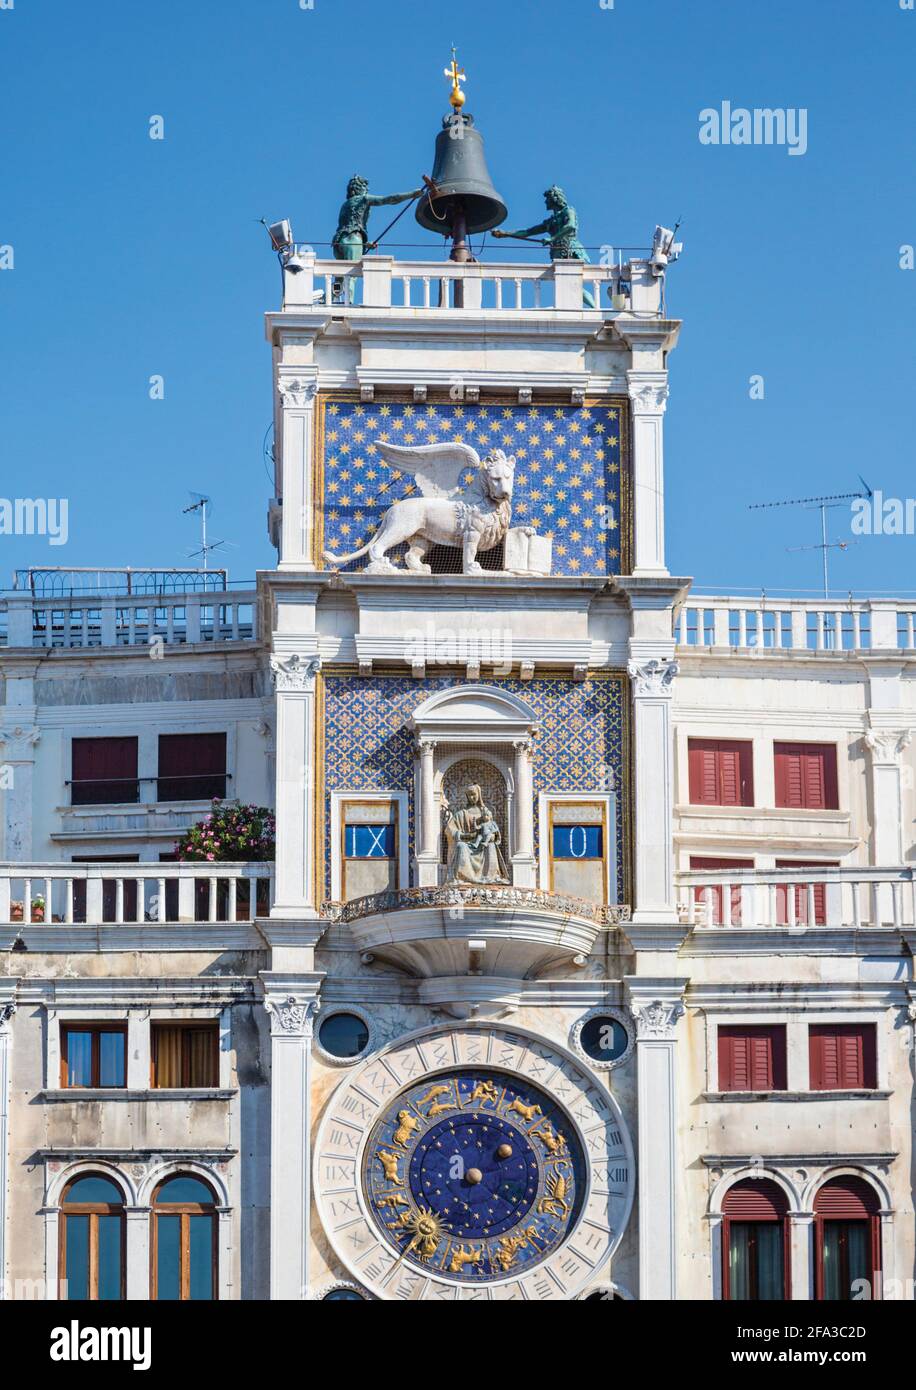 Venecia, Provincia de Venecia, Veneto, Italia. Torre dell'Orologio, o la Torre del Reloj, en la Piazza San Marco. La torre data de la década de 1490. Venecia y yo Foto de stock